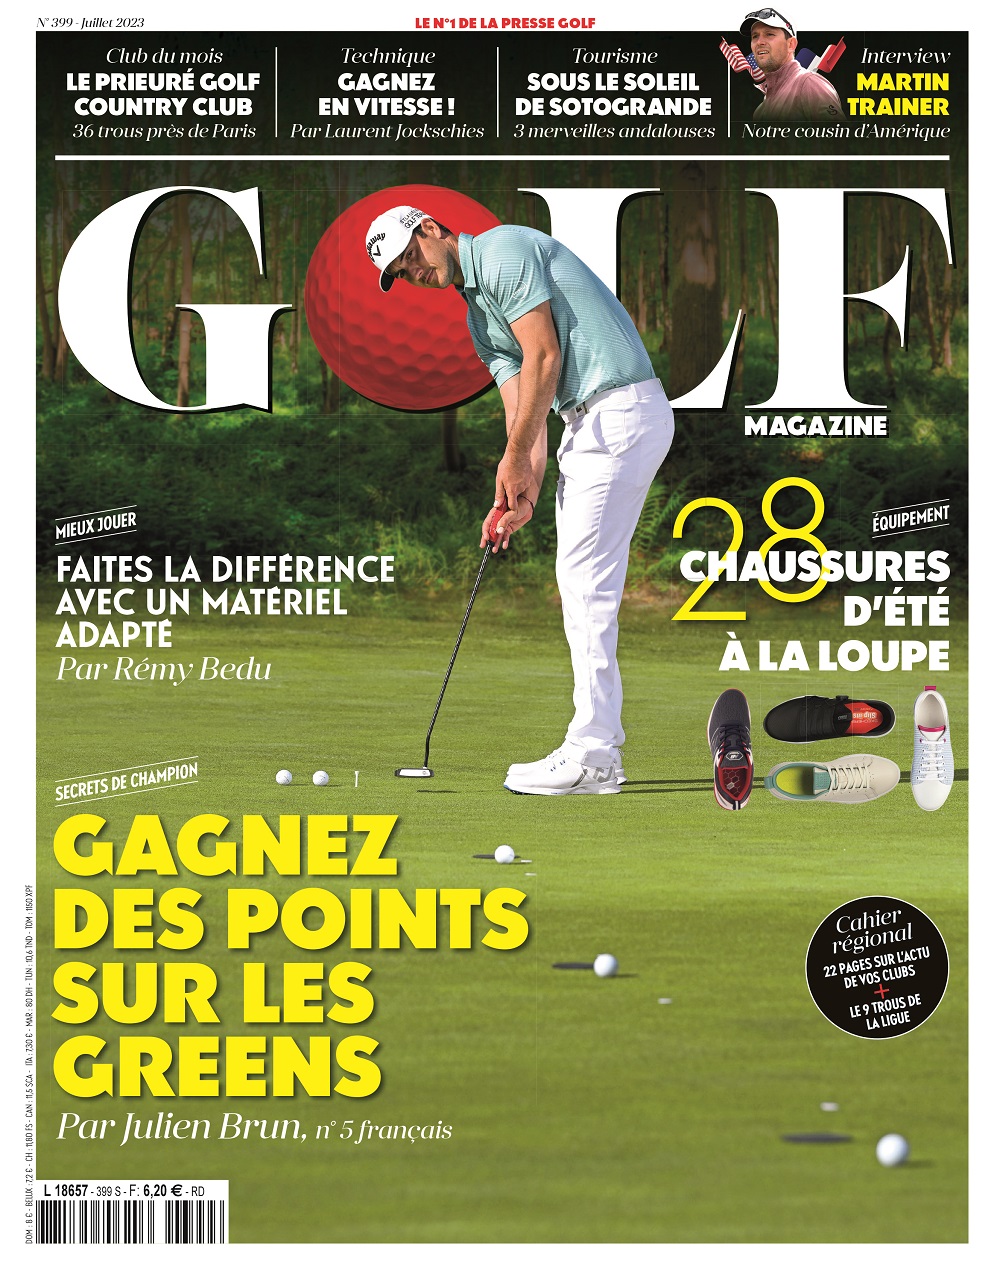 Golf Magazine n°399 : gagnez des points sur les greens !